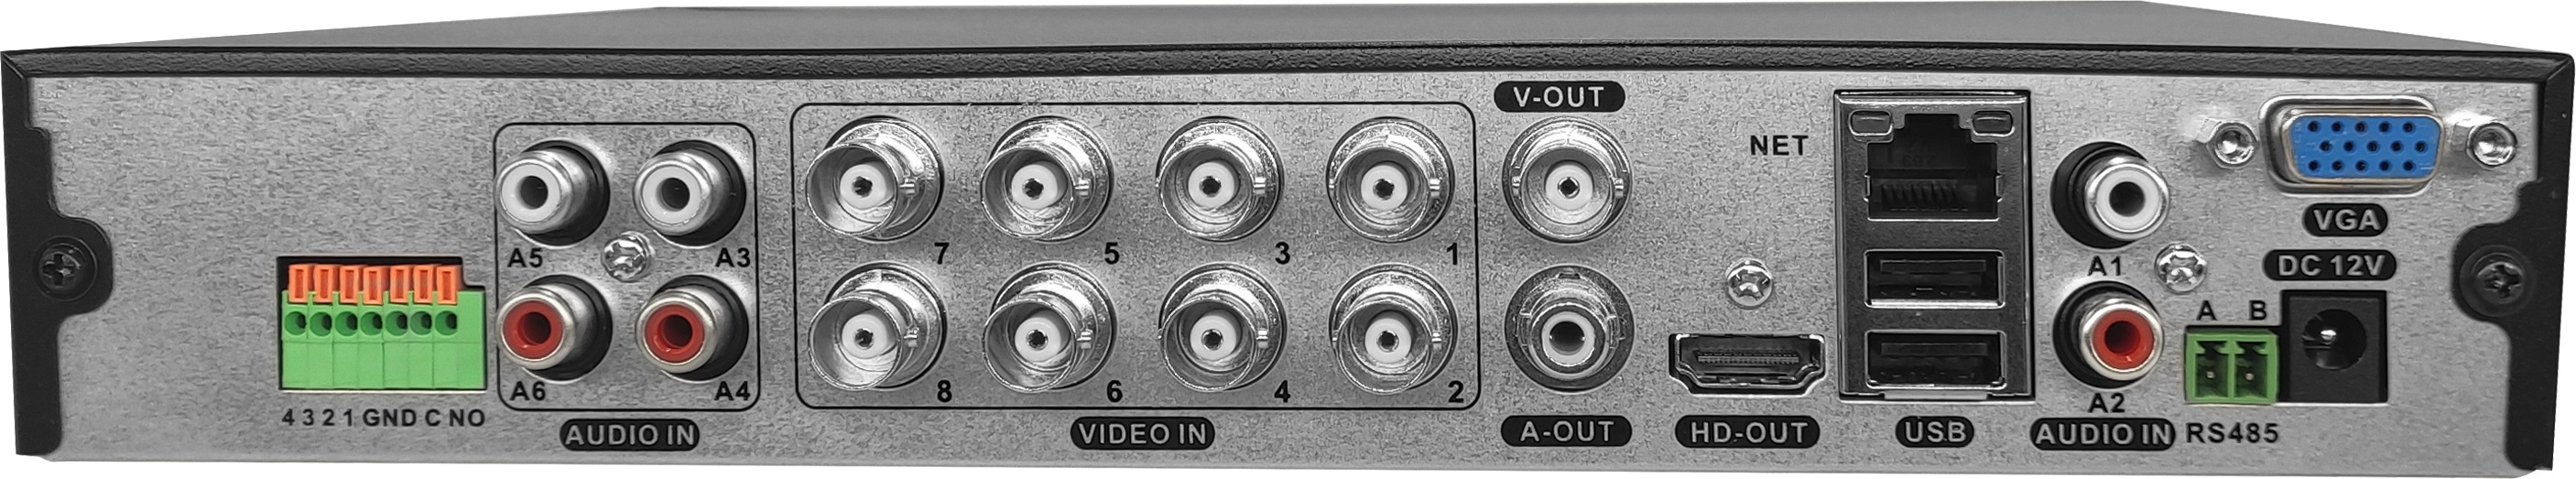 AltCam DVR853 XVR Видеорегистратор 8 канальный 8Mp_Lite 1080P 6 аудио (SATA*1 8ТБ) BitVision